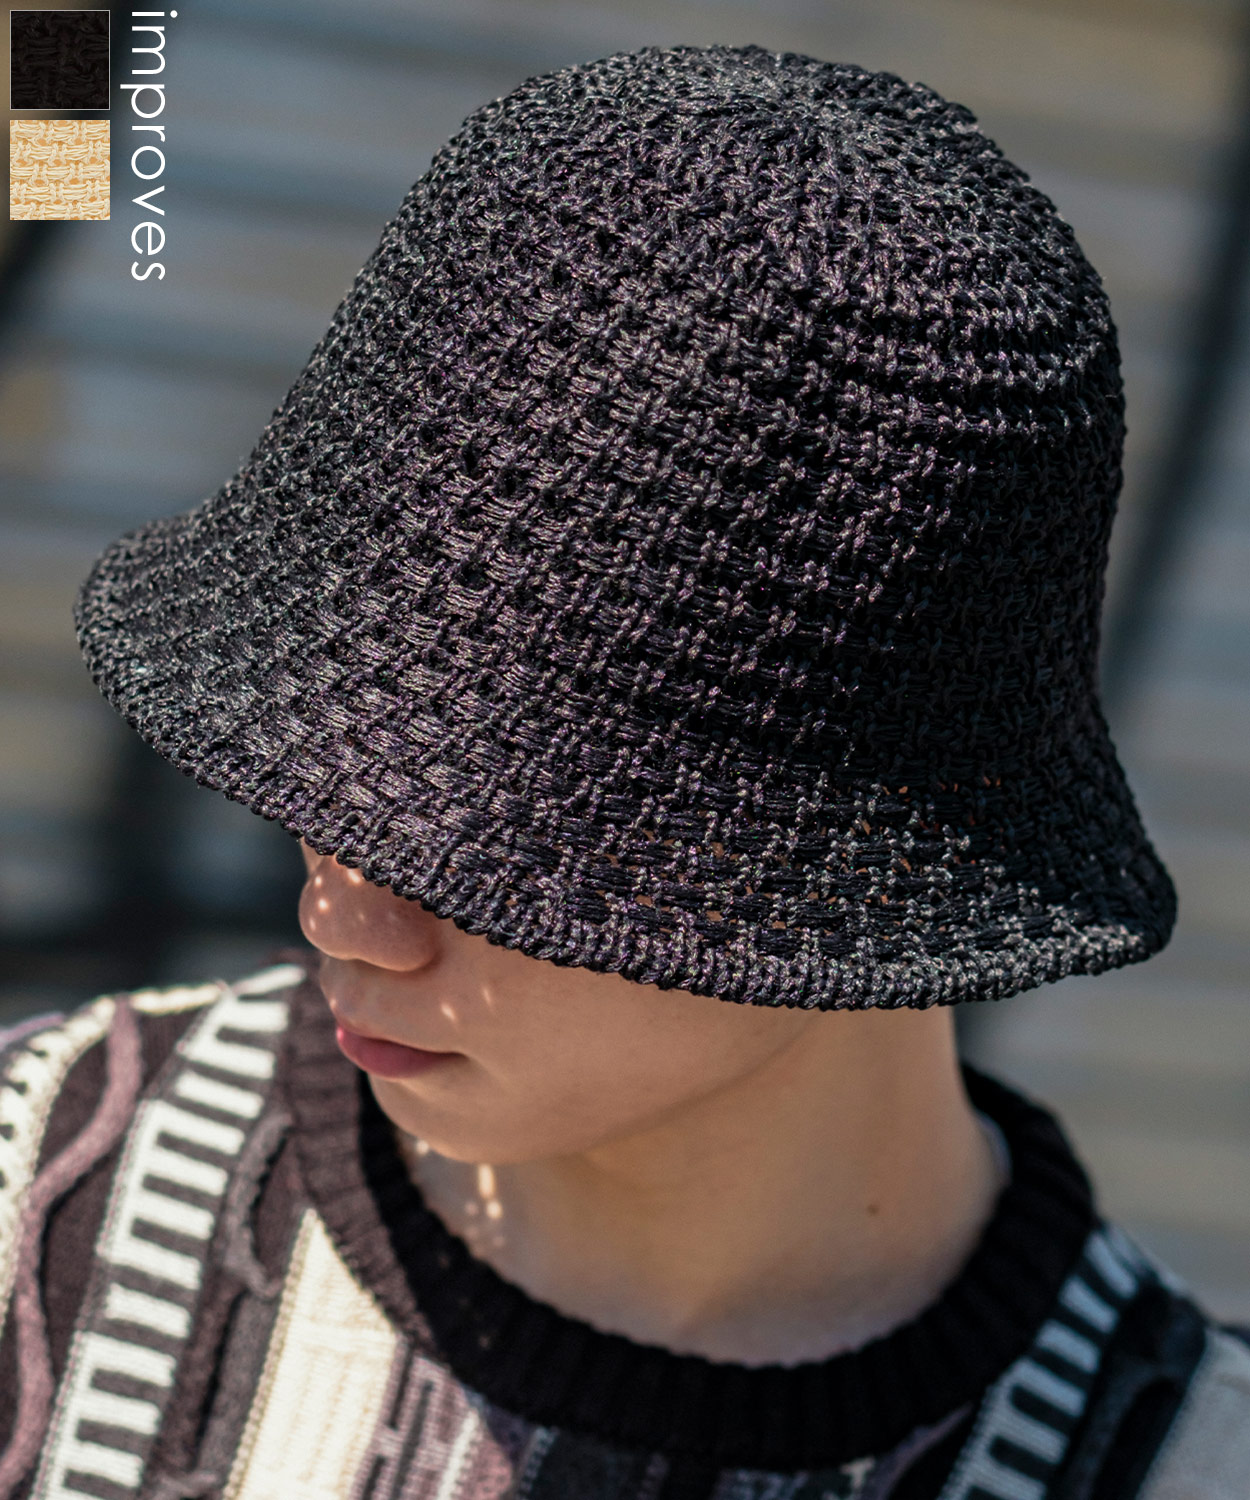 ハット メンズ レディース クロシェハット 帽子 ニット帽 バケットハット ストリート 韓国ファッション カジュアル 古着MIX ブラック ターコイズ  ネイビー :41606:improves インプローブス 通販 